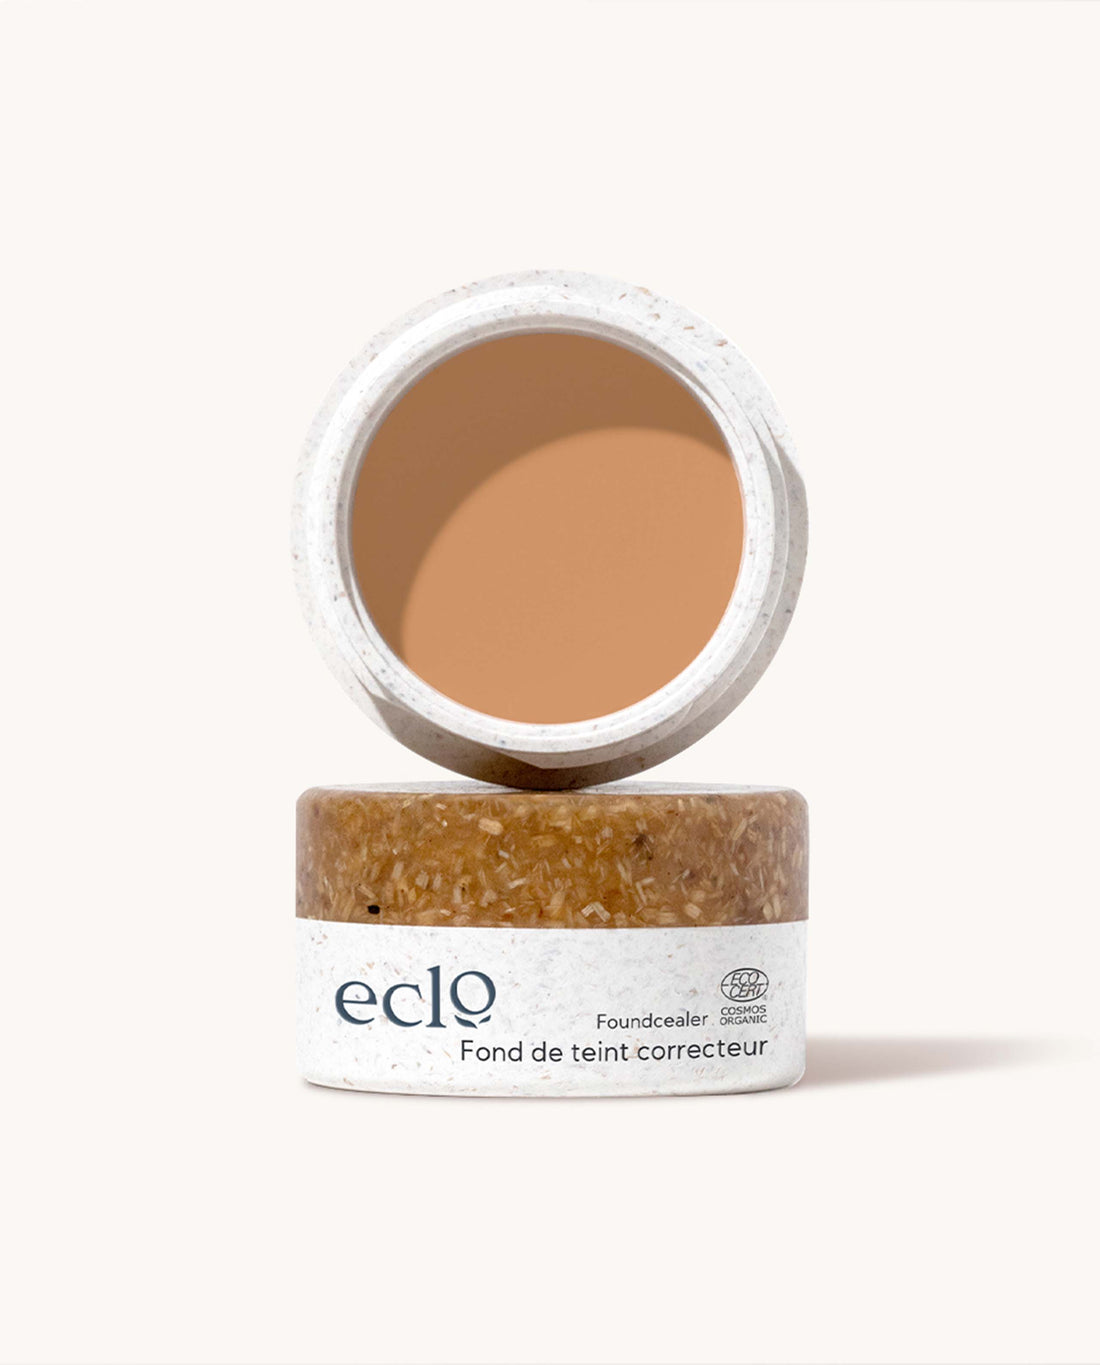 marché commun eclo beauté maquillage fond de teint correcteur naturel biologique Made in France zéro-déchet beige foncé